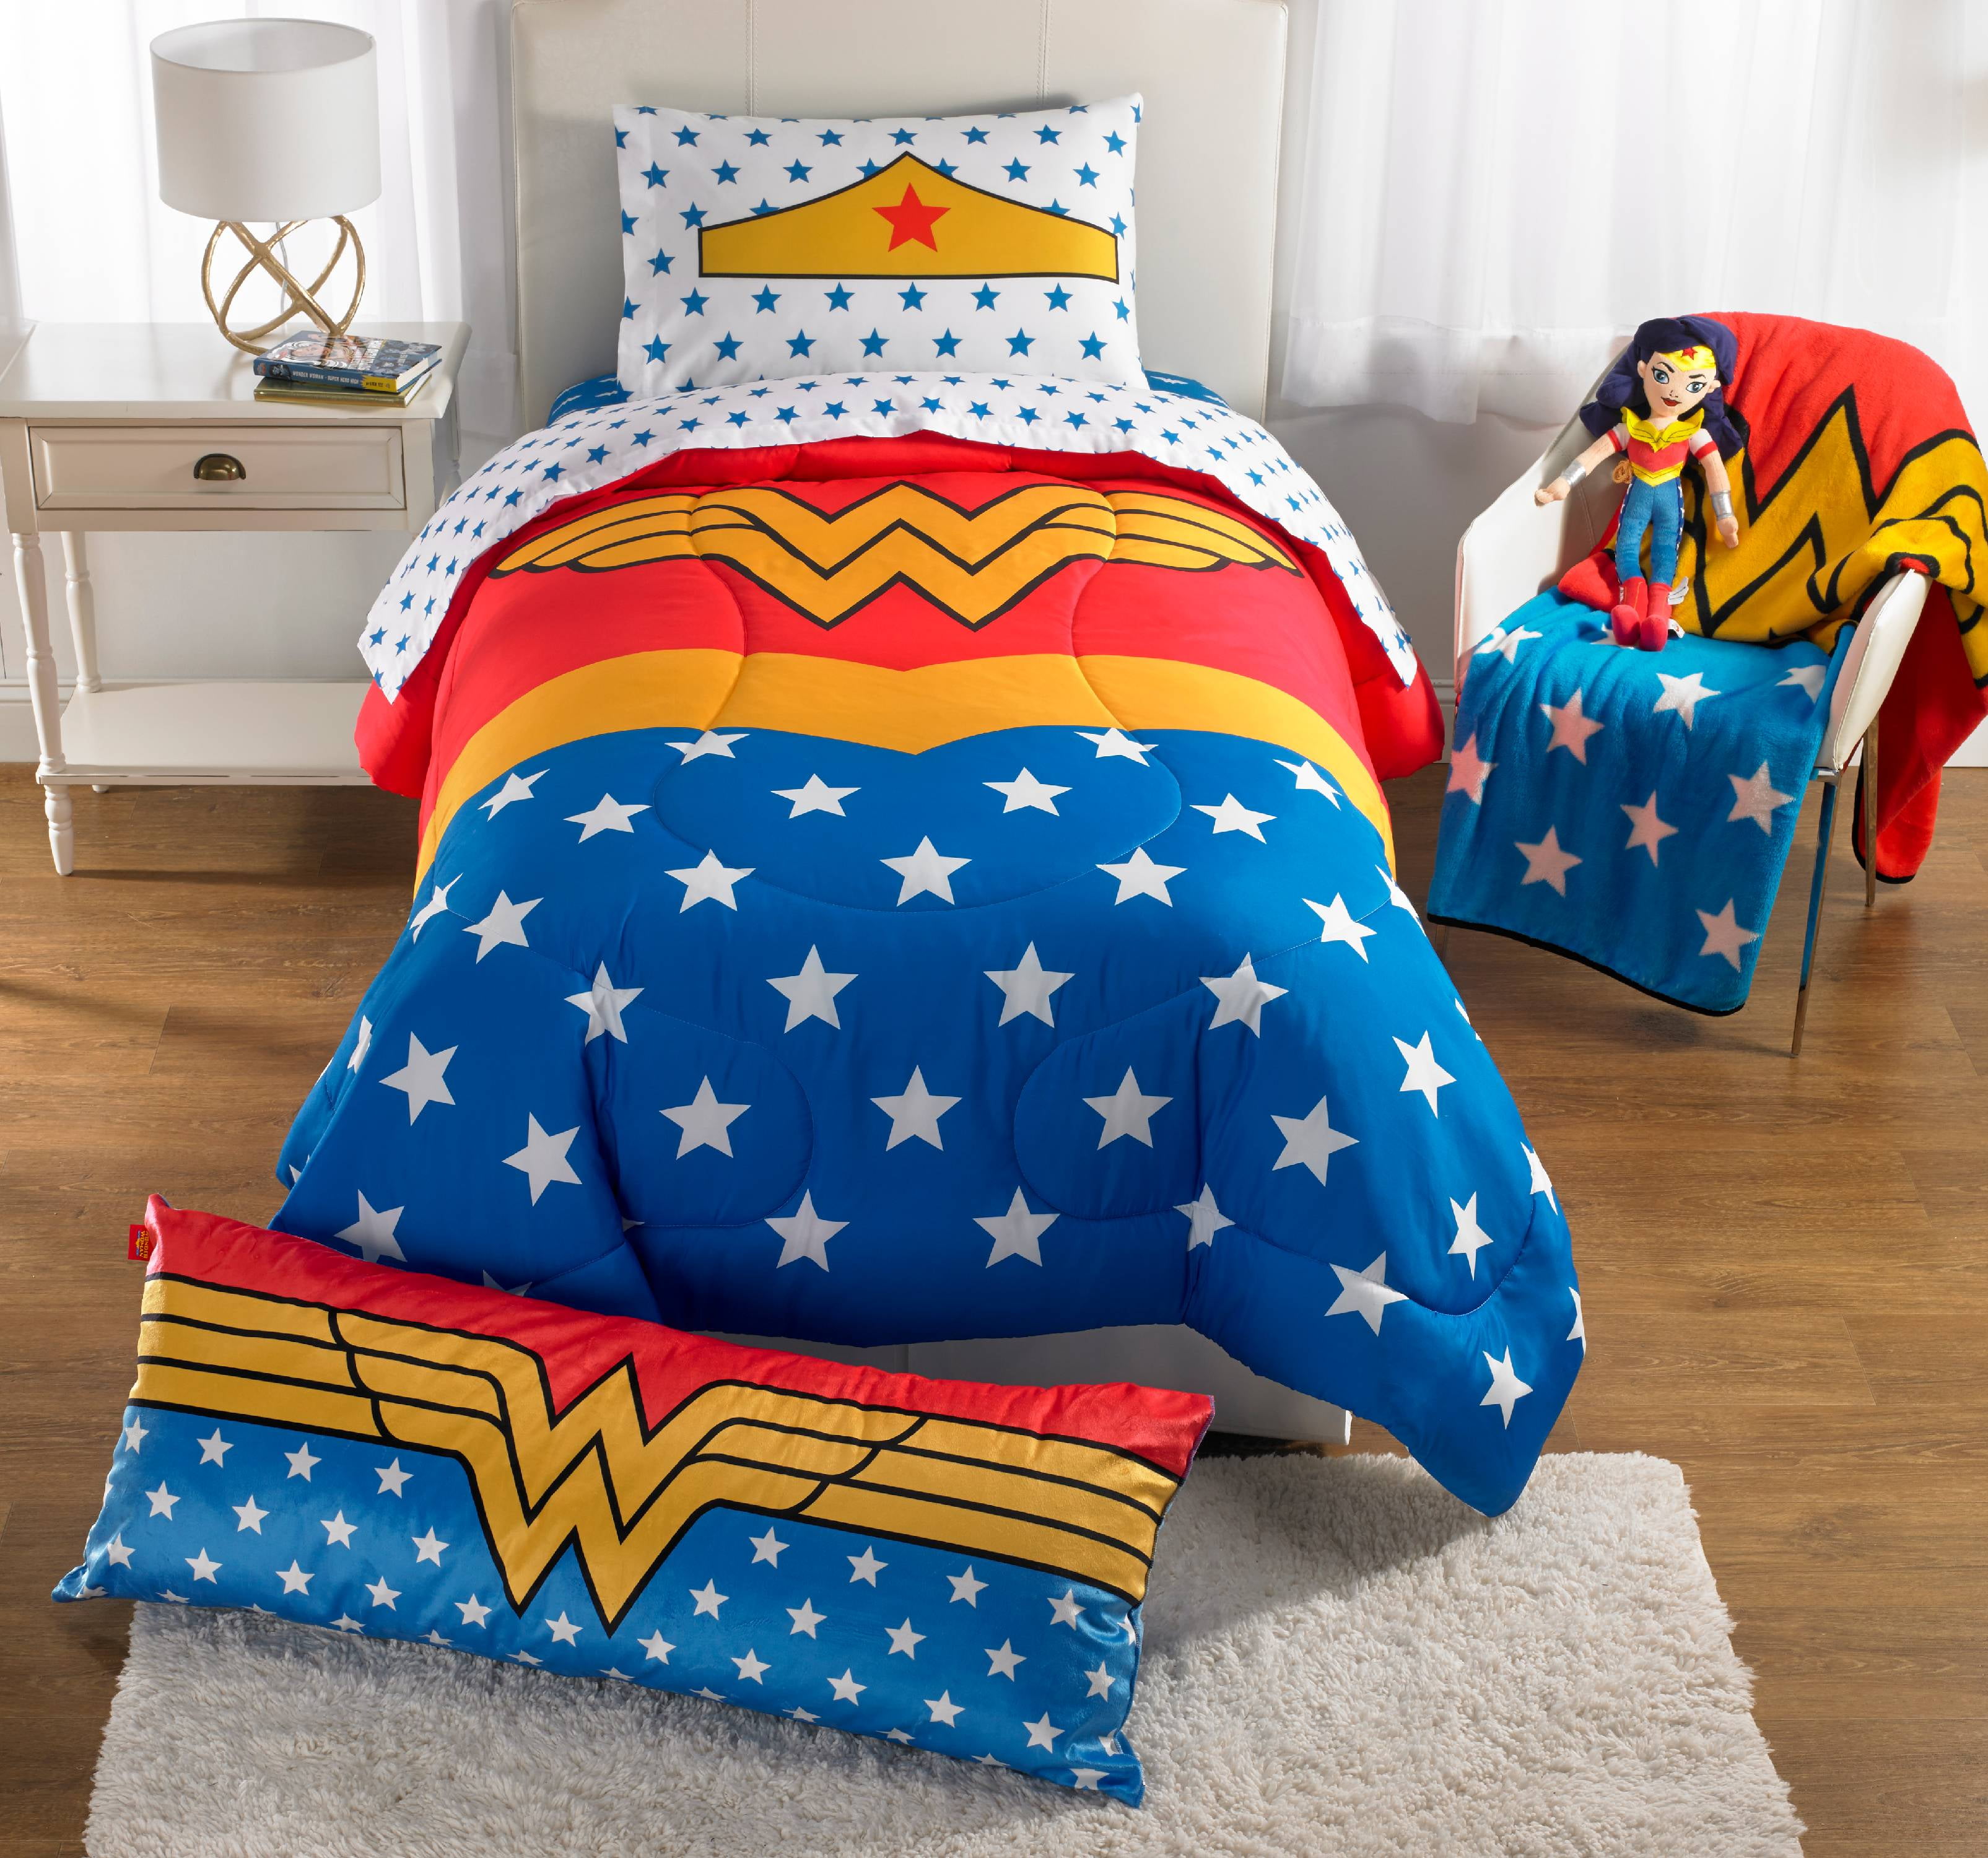 Wonder Woman headrest pillow